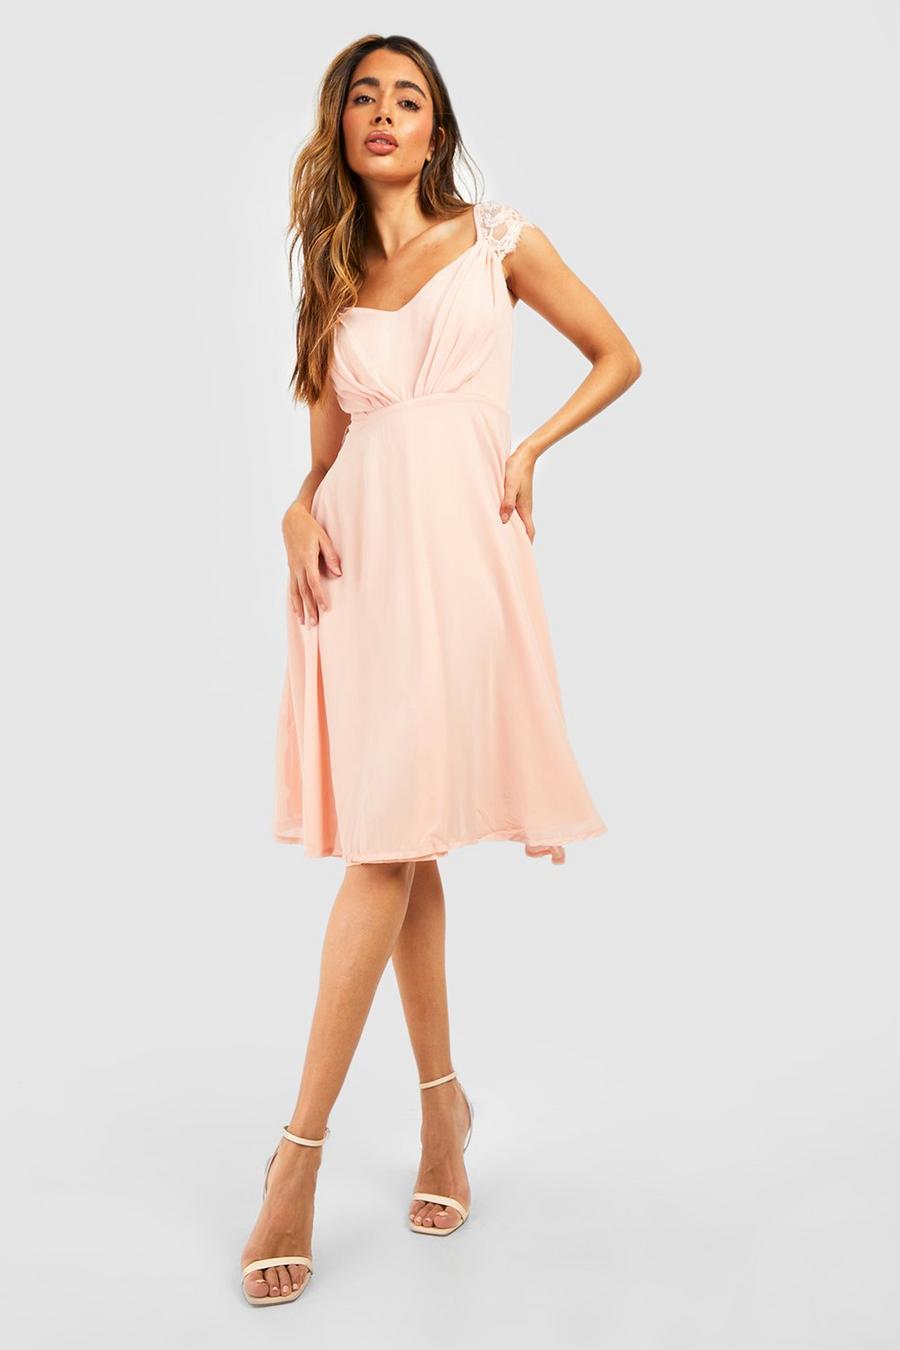 סמוק pink שמלת מידי סקייטר מבד שיפון לשושבינה עם תחרה image number 1